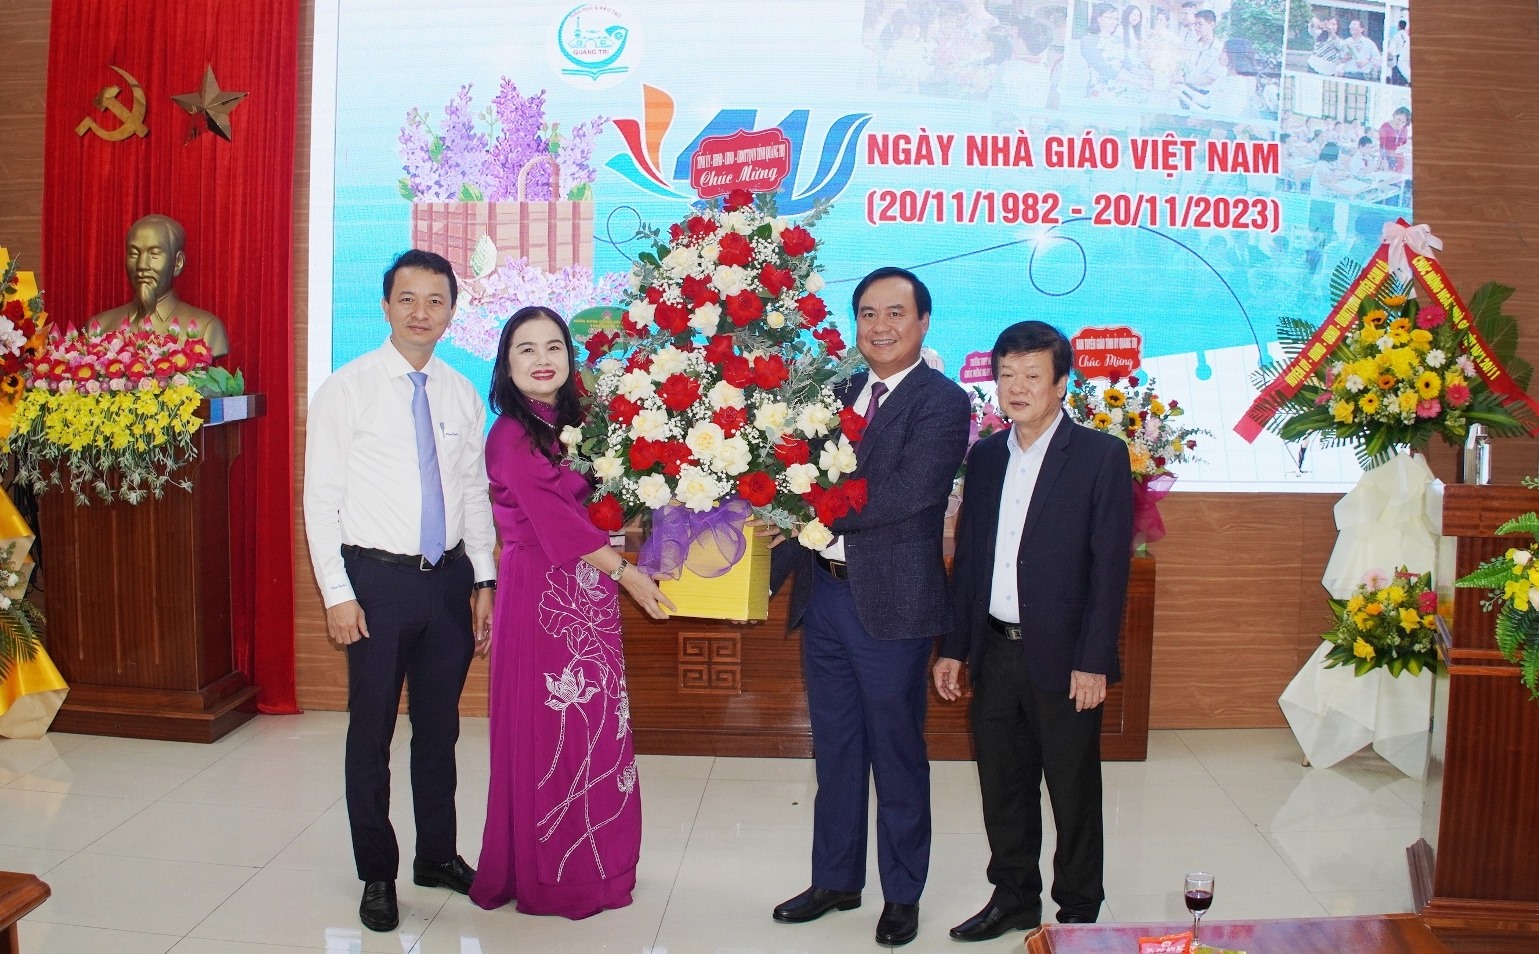 Chủ tịch UBND tỉnh Võ Văn Hưng tặng hoa chúc mừng Sở Giáo dục và Đào tạo nhân ngày Nhà giáo Việt Nam - Ảnh: T.N